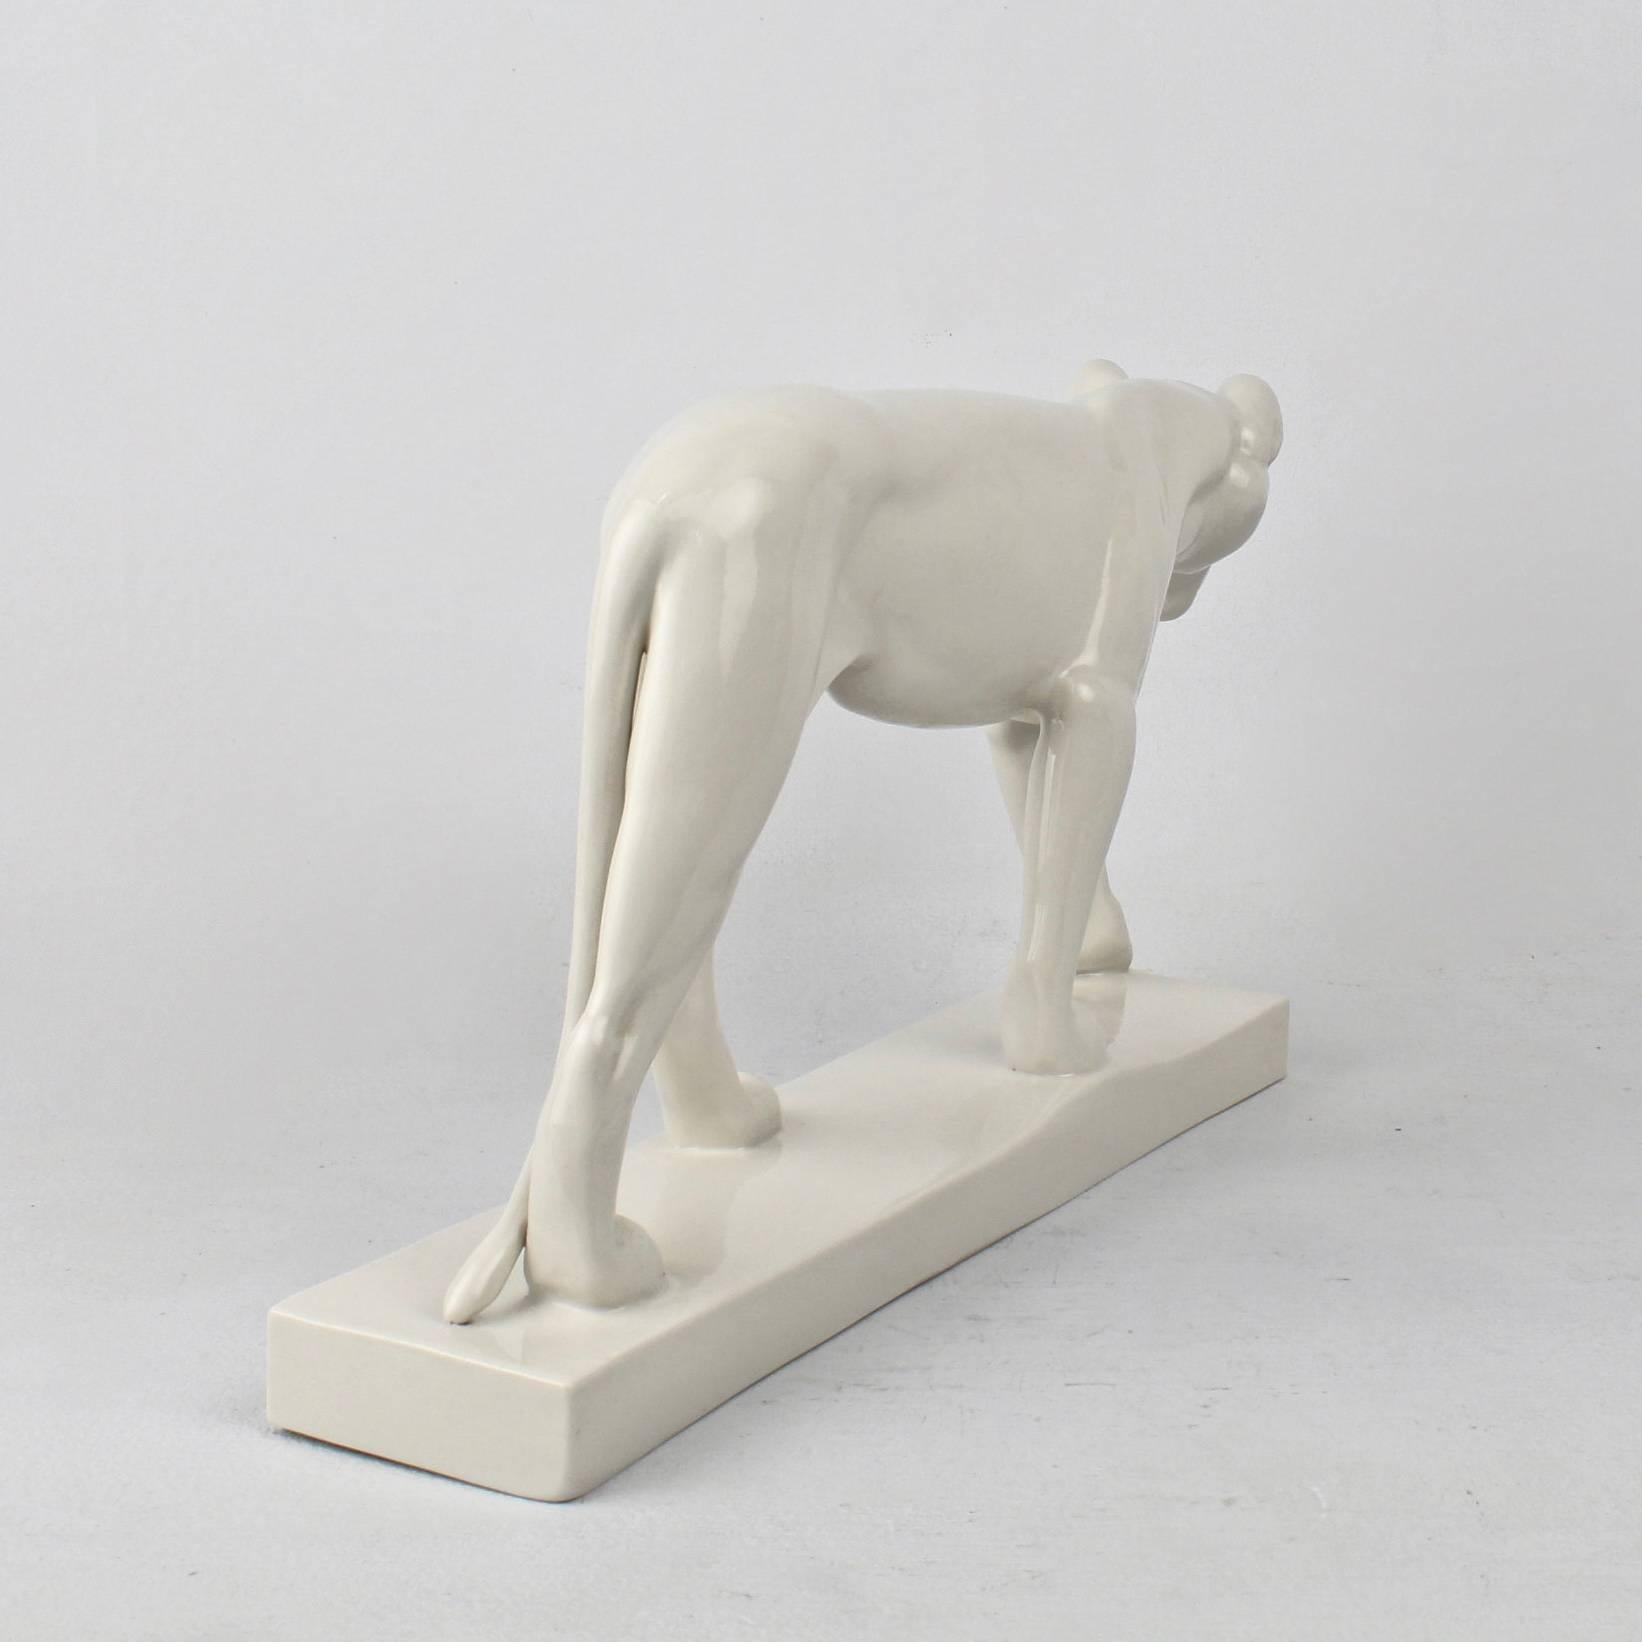 20th Century Jugendstil White Porcelain Lion Figurine by Gerhard Marcks for Schwarzburger